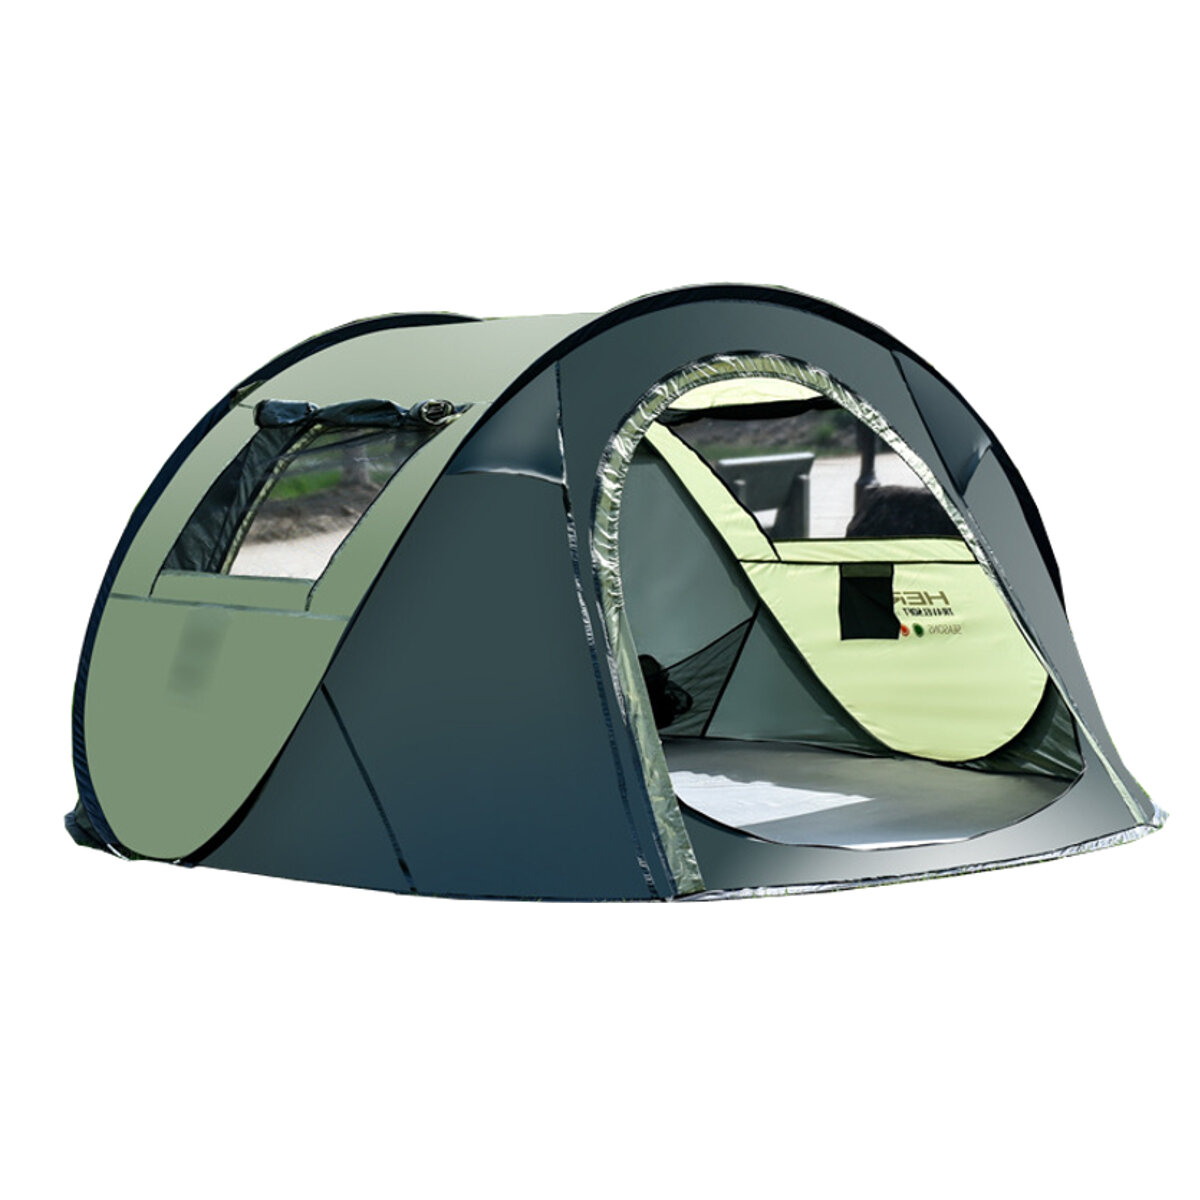 5-8人用防水キャンプテント、自動高速テント、アウトドア旅行やハイキング用 - コーヒー/グリーン